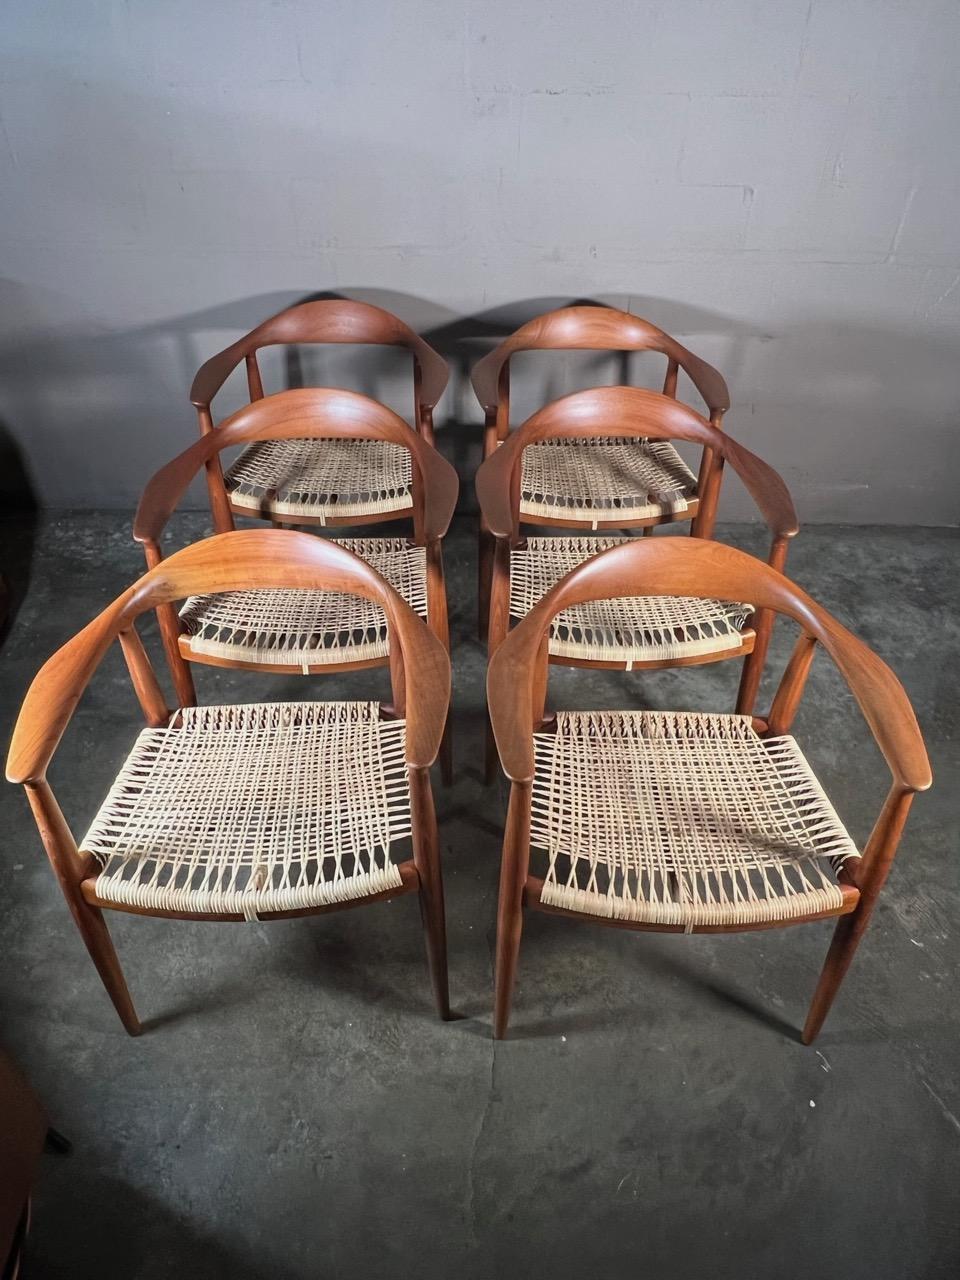 Un superbe ensemble de six (6) chaises classiques Hans Wegner JH-501. Teck et canne. Restauré et recanisé.